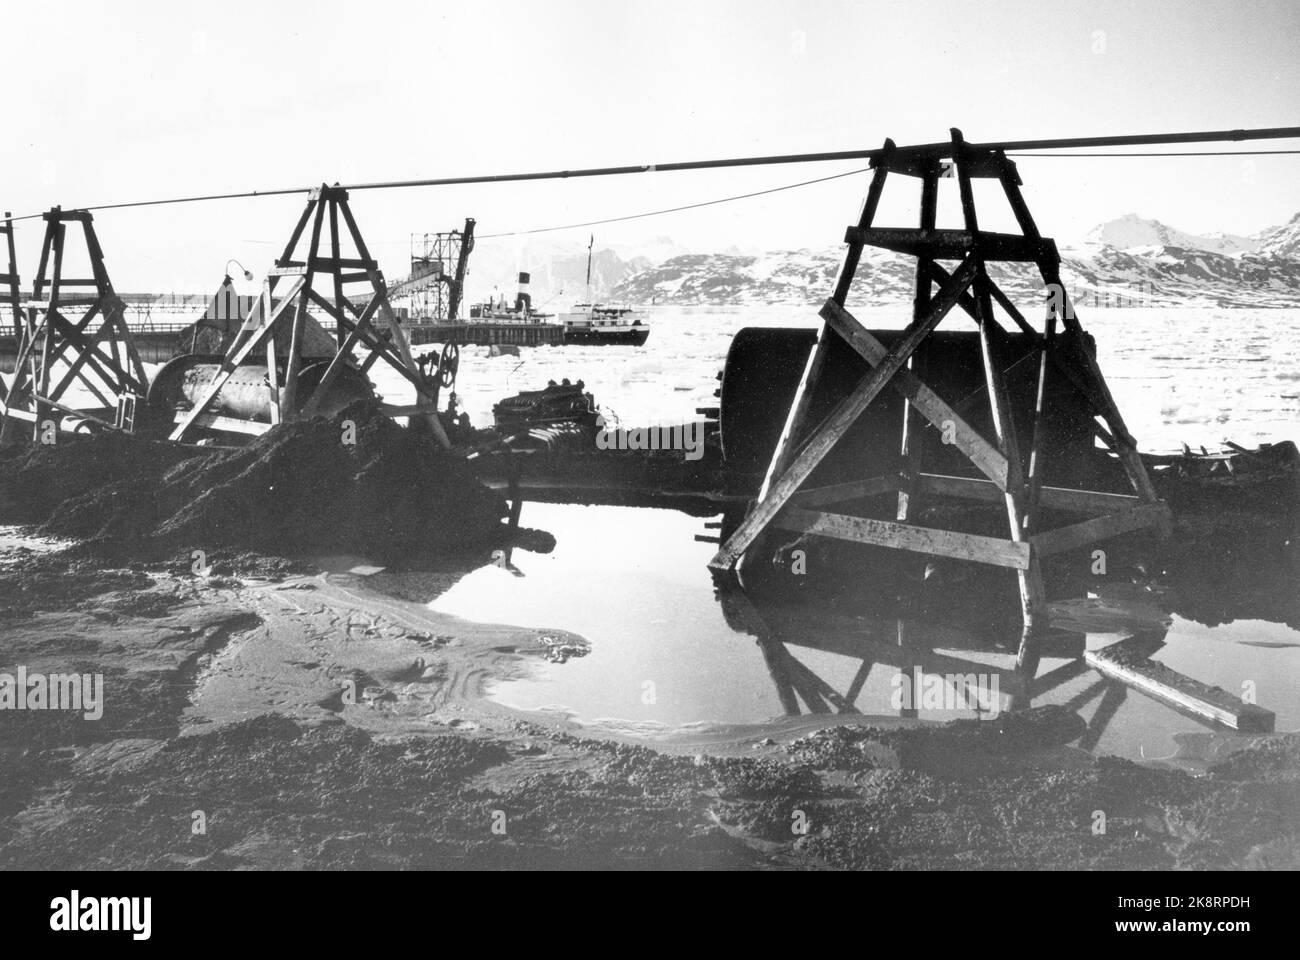 Svalbard, Ny-Ålesund 1963. Alle Aktivitäten in den Kings Bay Minen wurden vorerst eingestellt. Der große Bergbauunfall im Jahr 1962. Dies wird von der Regierung festgelegt, und die Entscheidung hat zu einer Aufbruchstimmung in der Bergbaugemeinde geführt. Hier sind leere Bergbauwagen und Ausrüstung für diese. Foto: Aage Storløkken / Aktuell / NTB Stockfoto